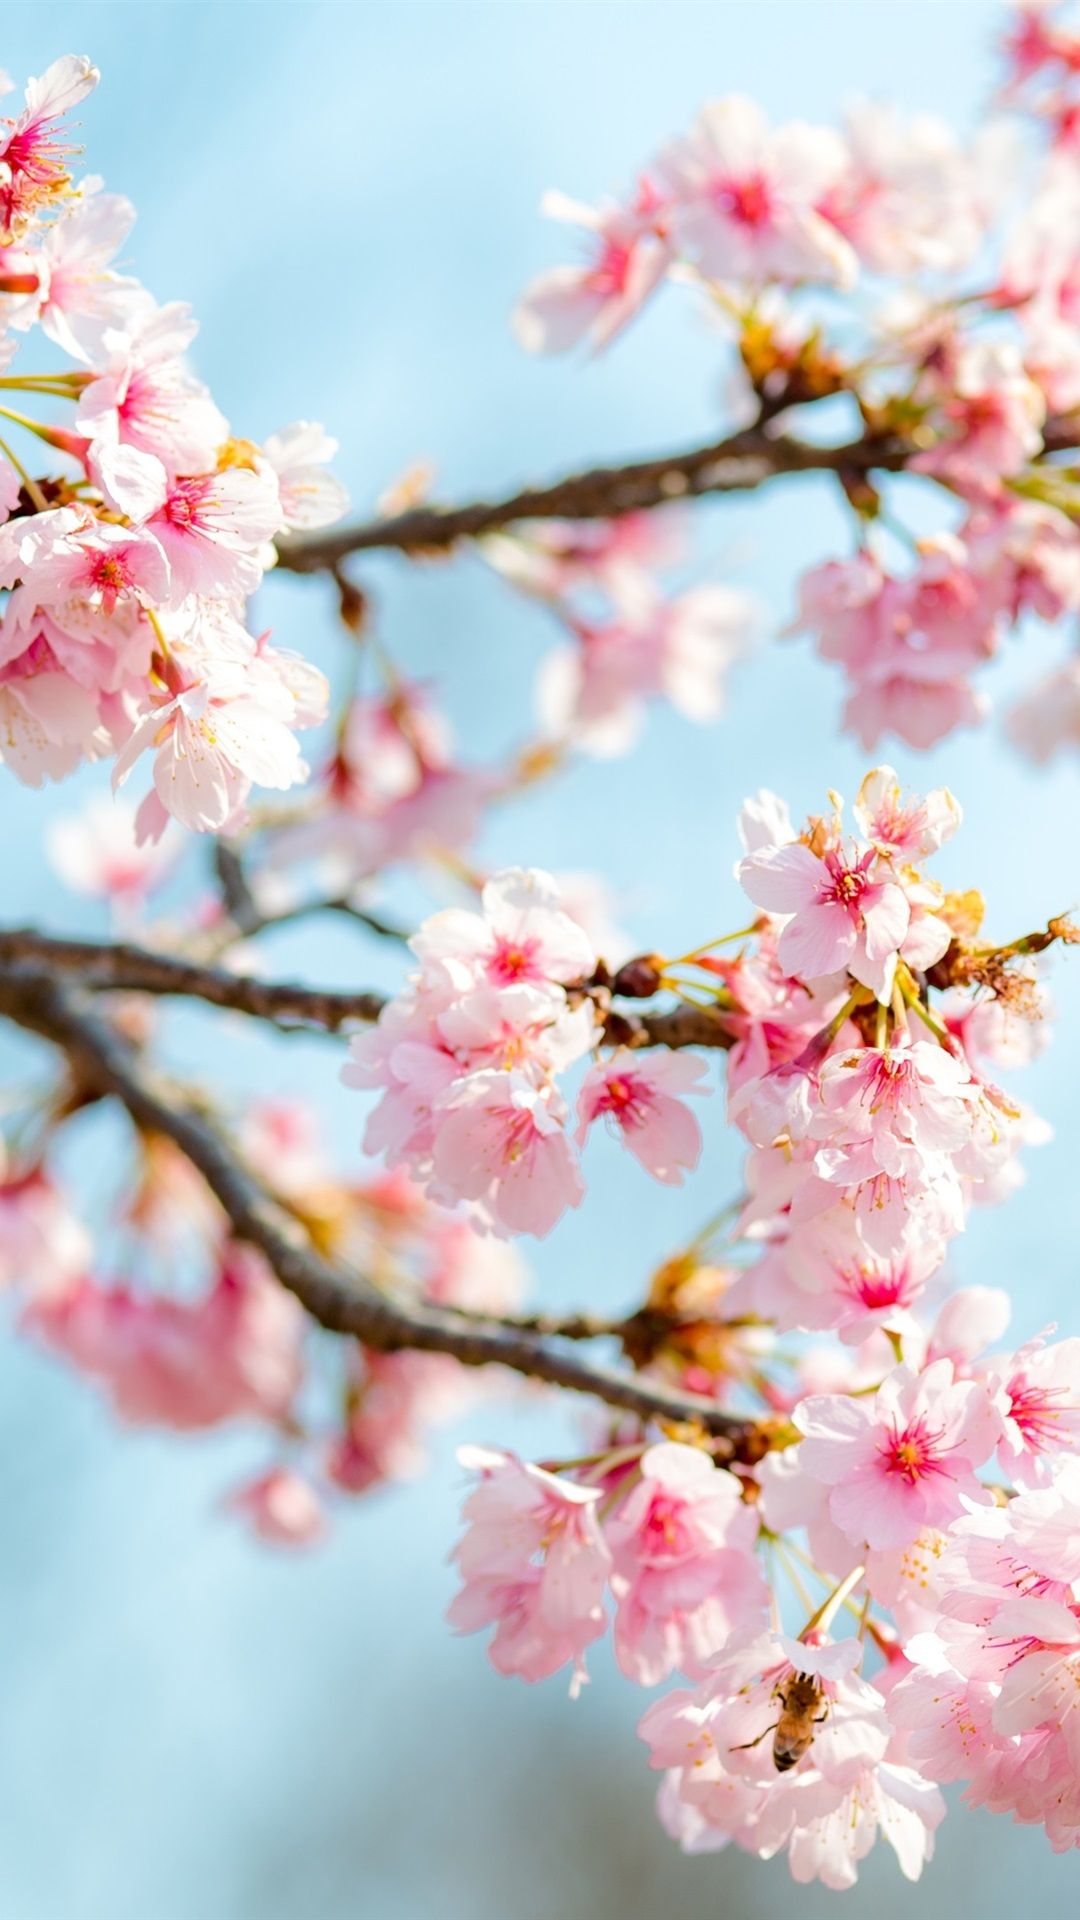 Free download Sakura bloom pink flowers twigs spring 1080x1920